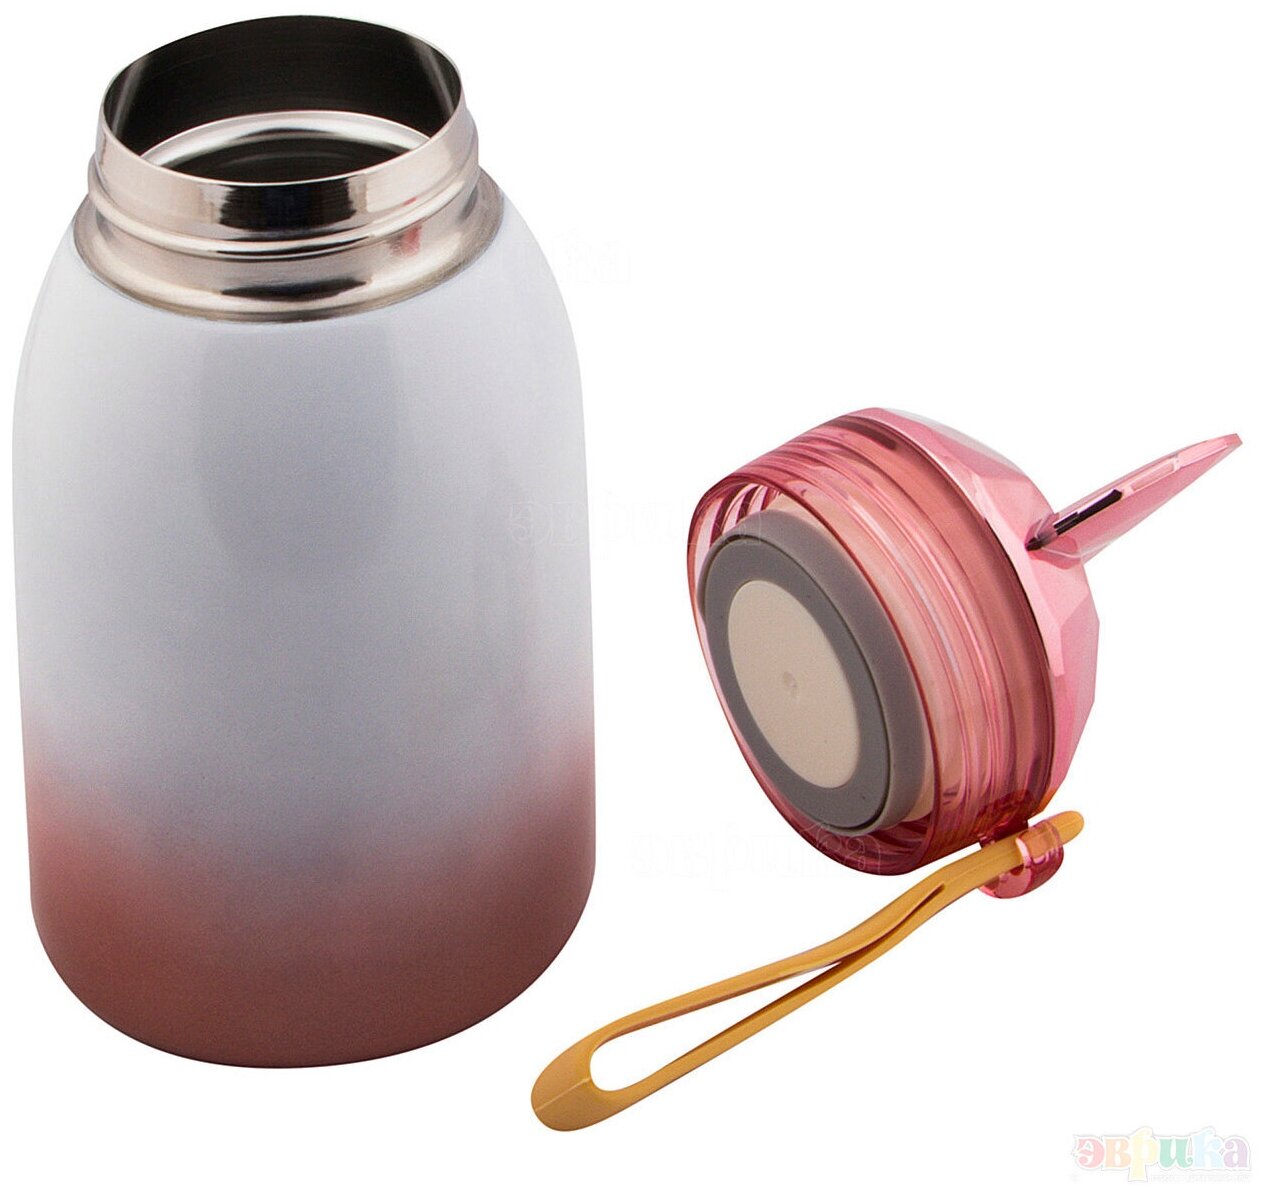 Термос для чая, кофе Микки 17 см розовый 300 мл Эврика детский, женский, подарочный, спортивный